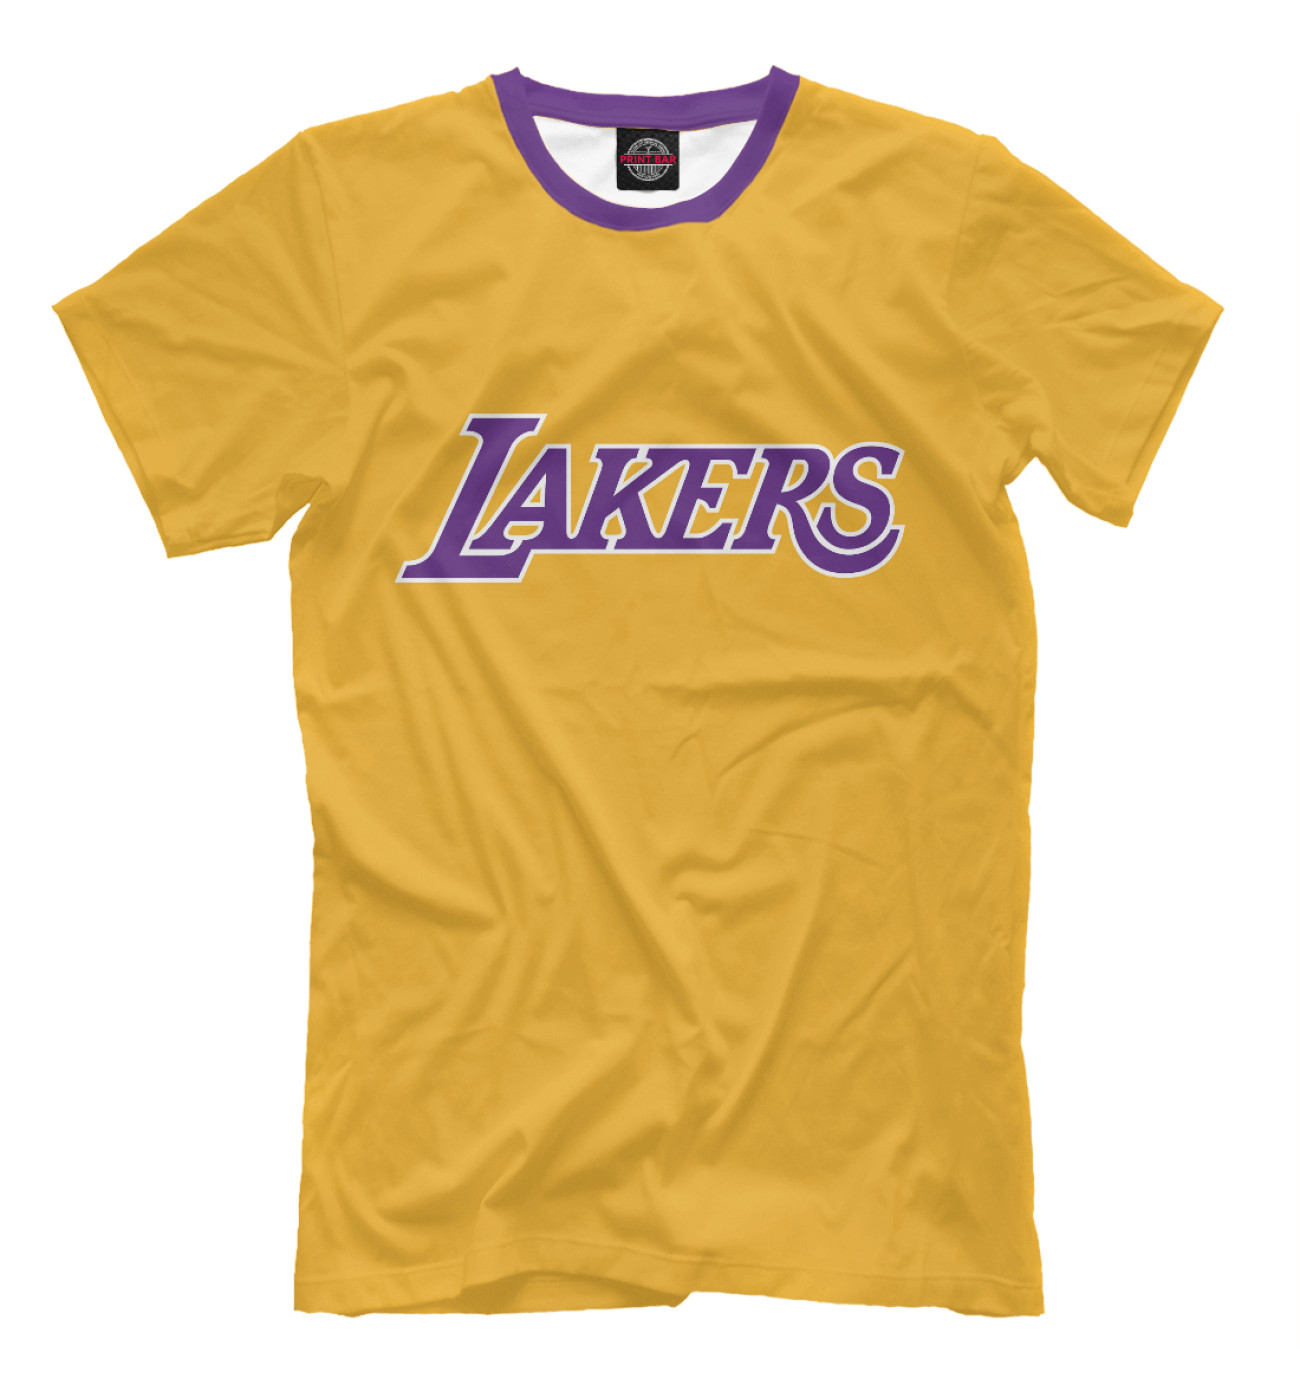 Мужская Футболка Lakers, артикул: NBA-581364-fut-2